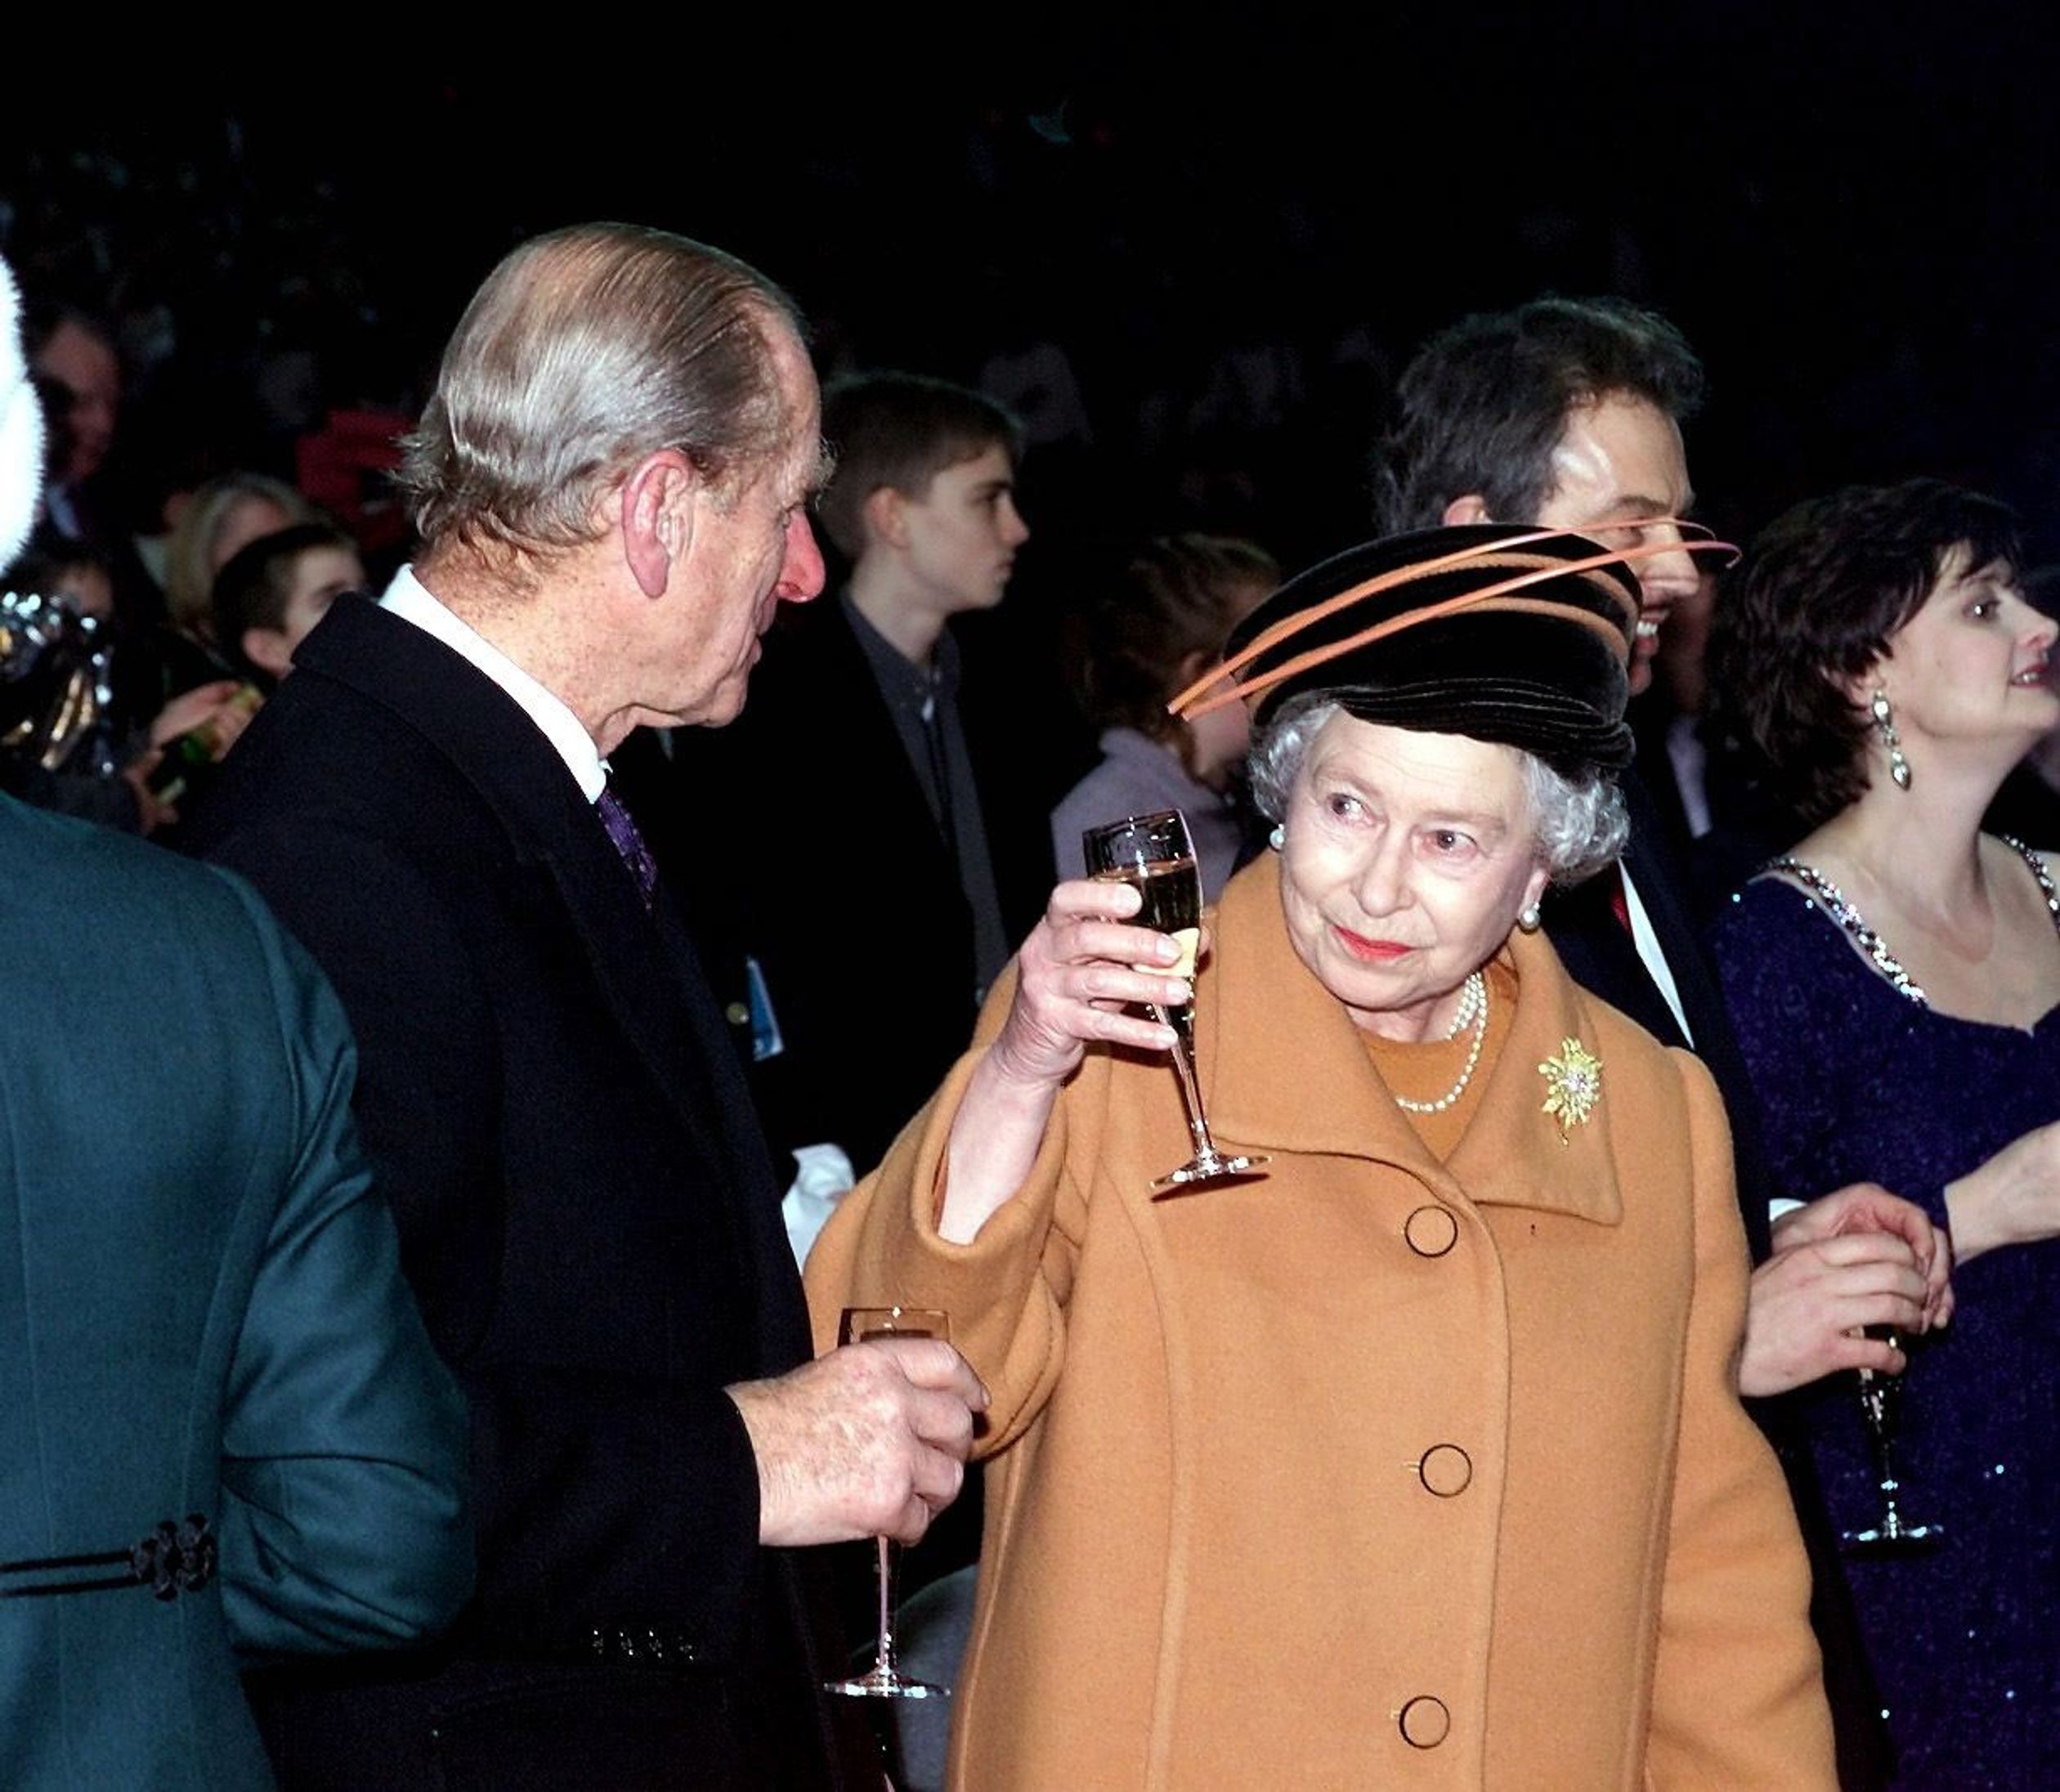 Op naar het nieuwe jaar! Koningin Elizabeth heft haar champagneglas op naar prins Philip om kort voor middernacht 31 december 1999 te proosten op het nieuwe Millenium.